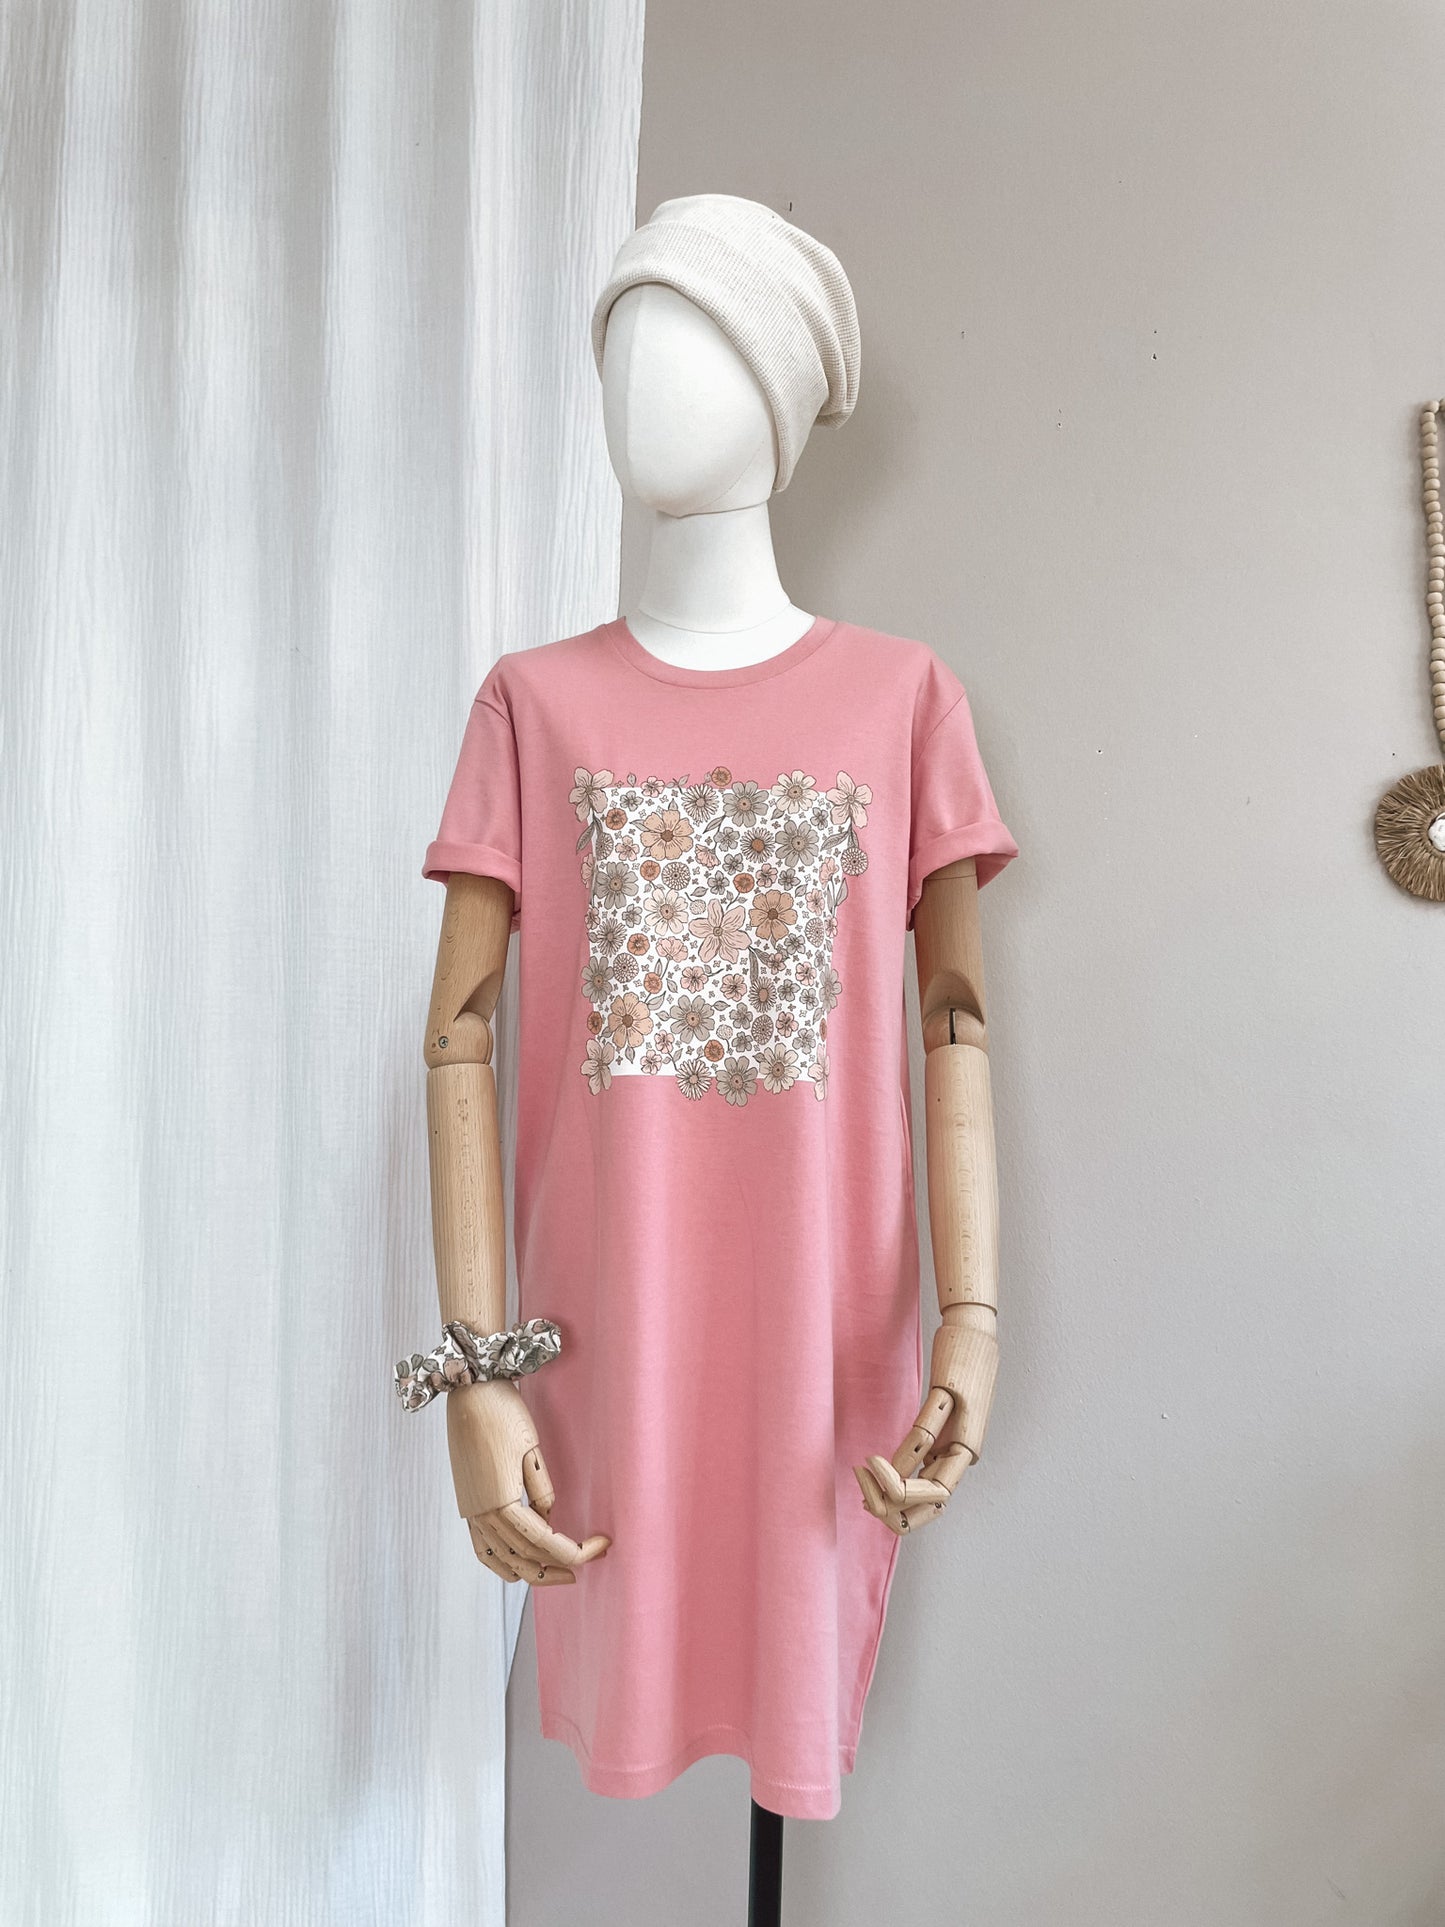 T-shirt dress / Ecru bold floral / bubble gum